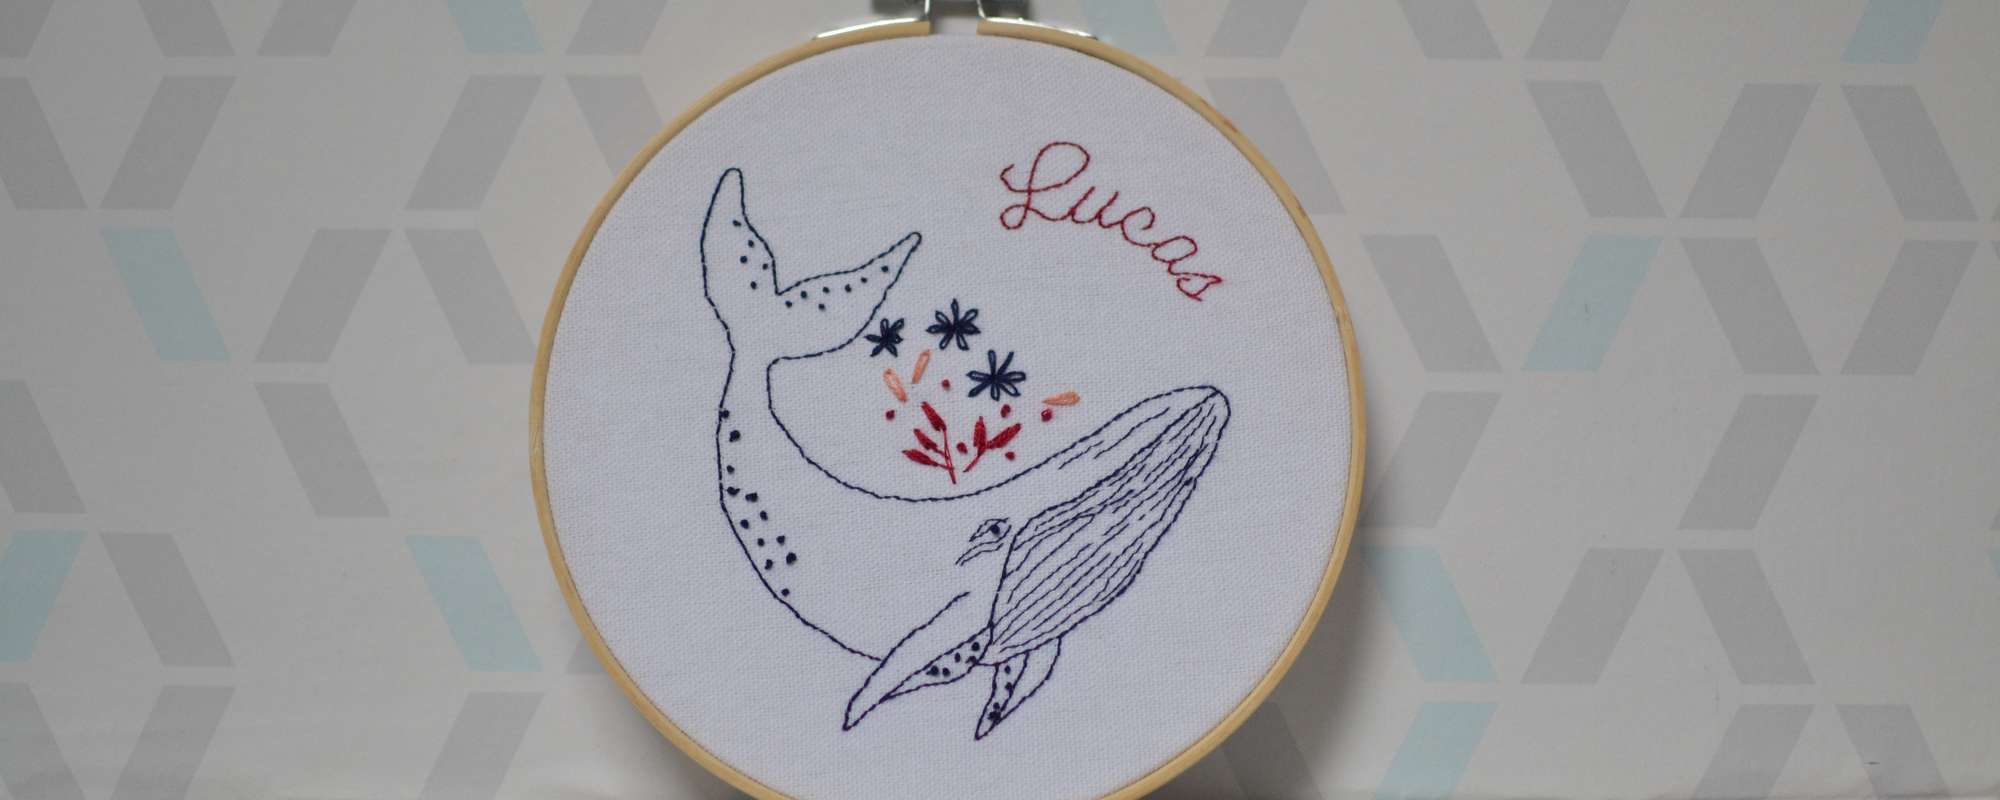 Cadeau de naissance : une broderie baleine pour Lucas